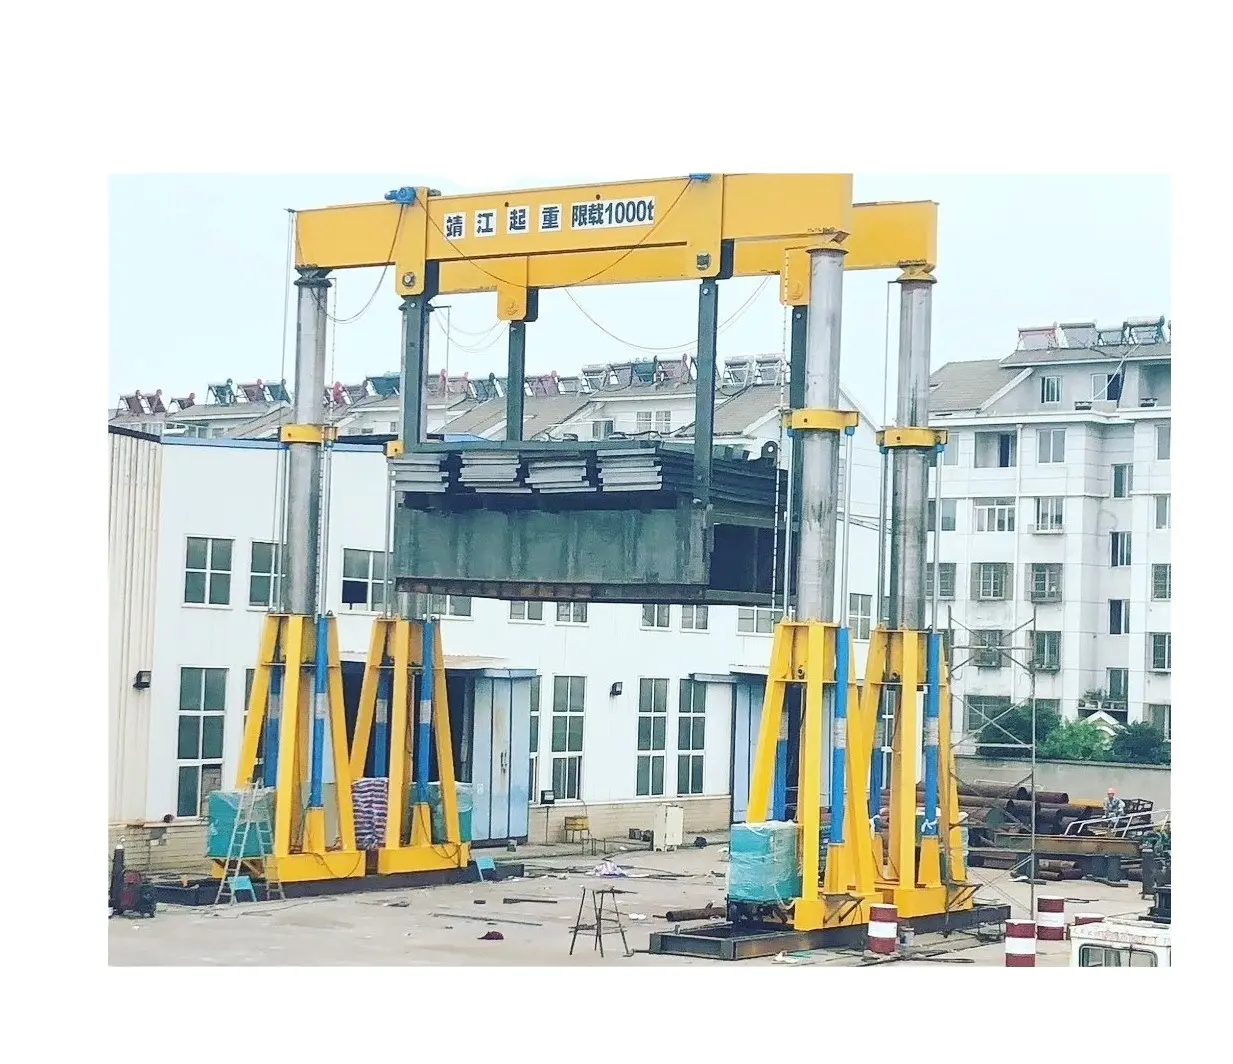 23ton Rail En Bandcontainer Portaalkraan/Hydraulische Portaalkraan Leverancier In China